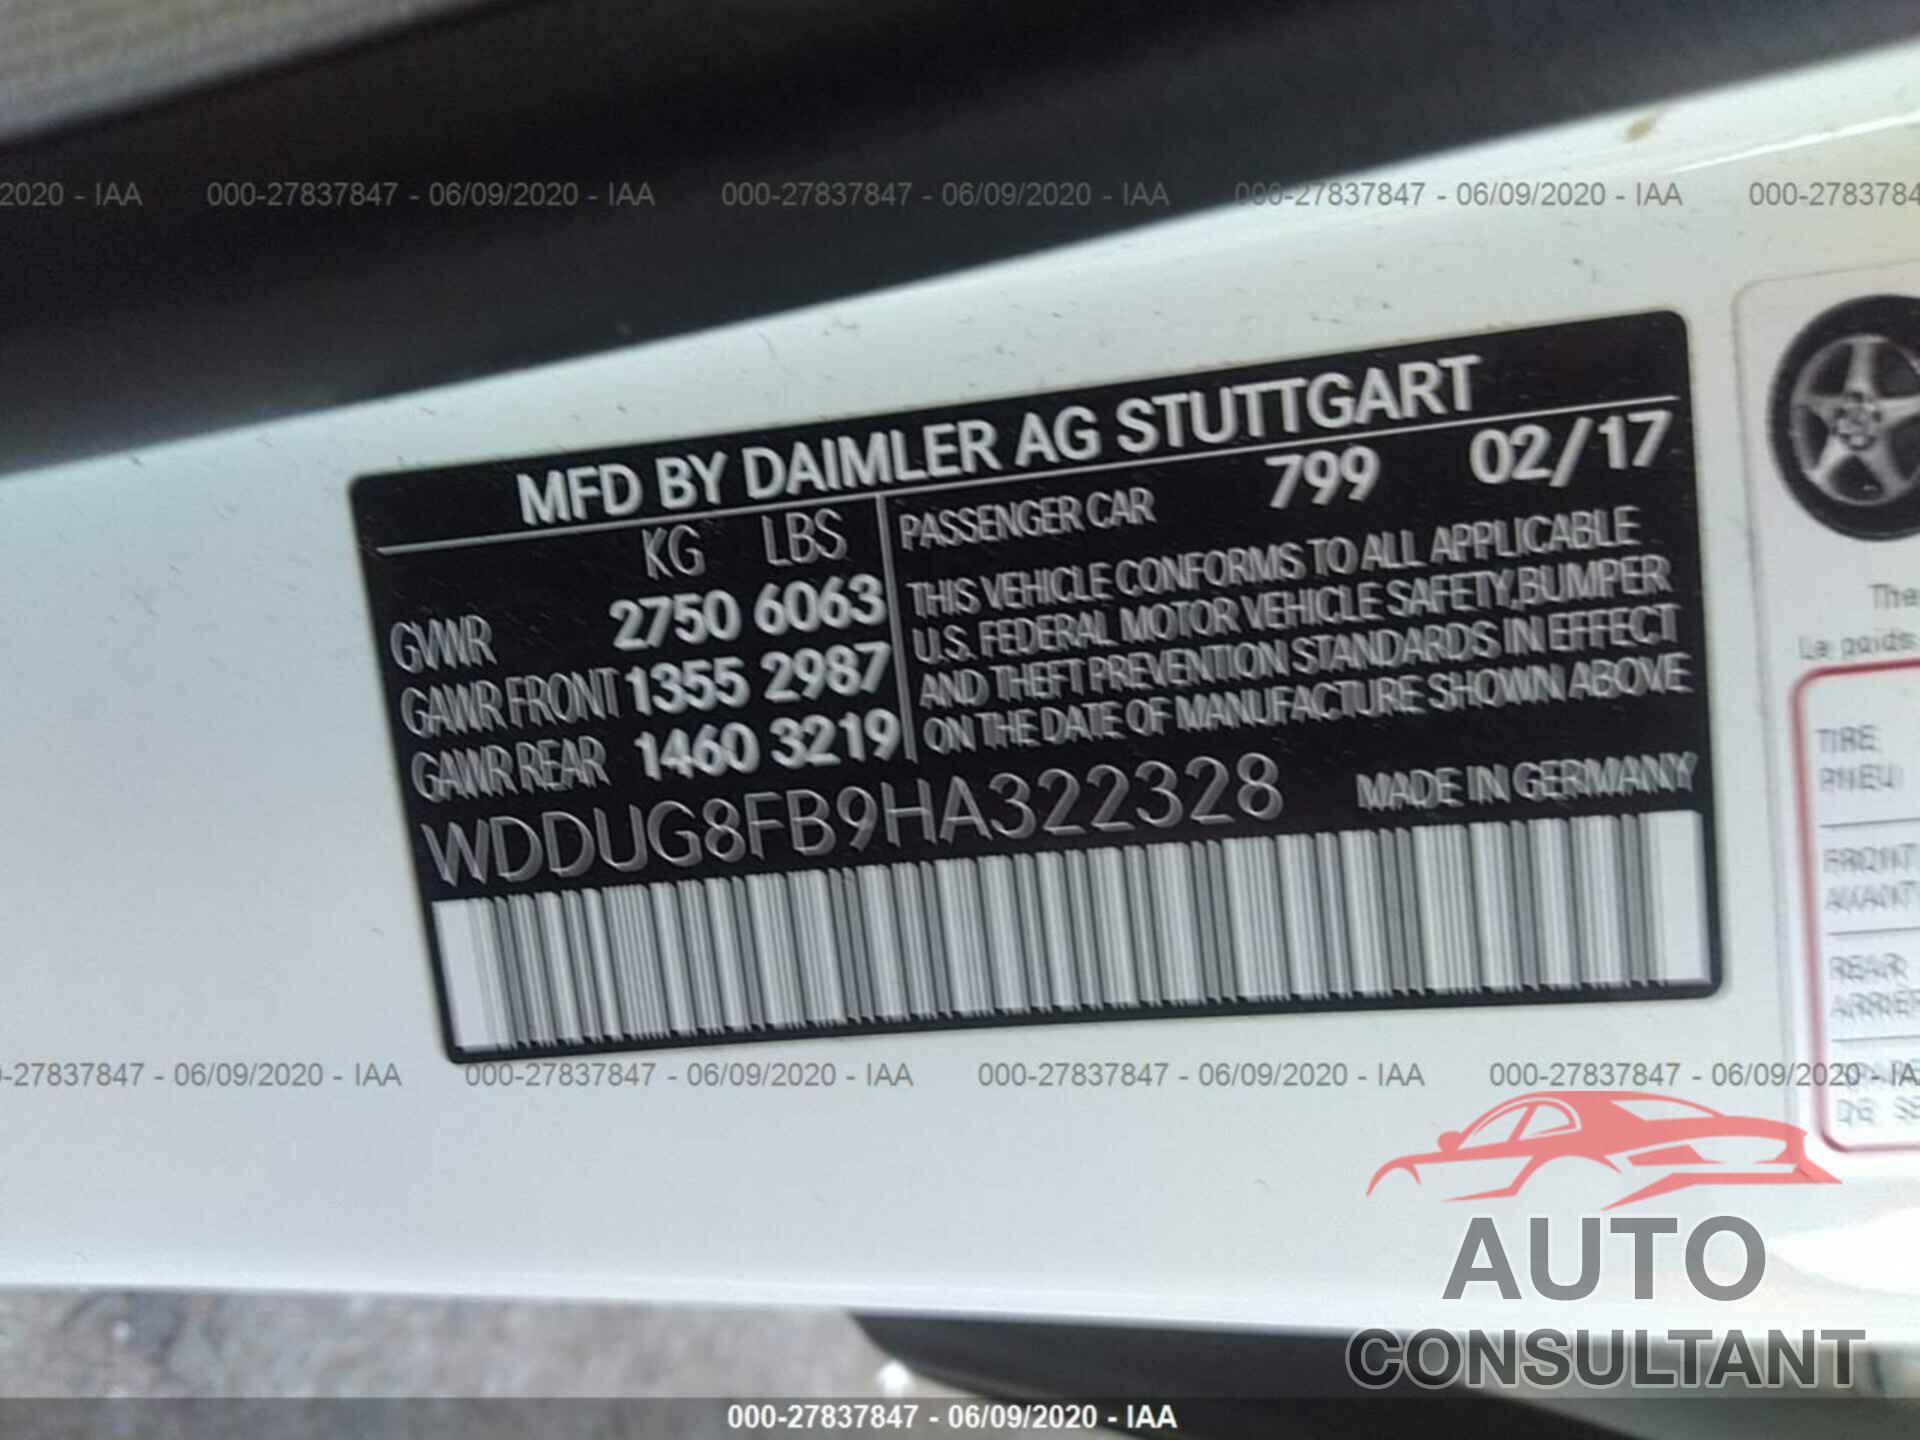 Mercedes-Benz S 2017 - WDDUG8FB9HA322328